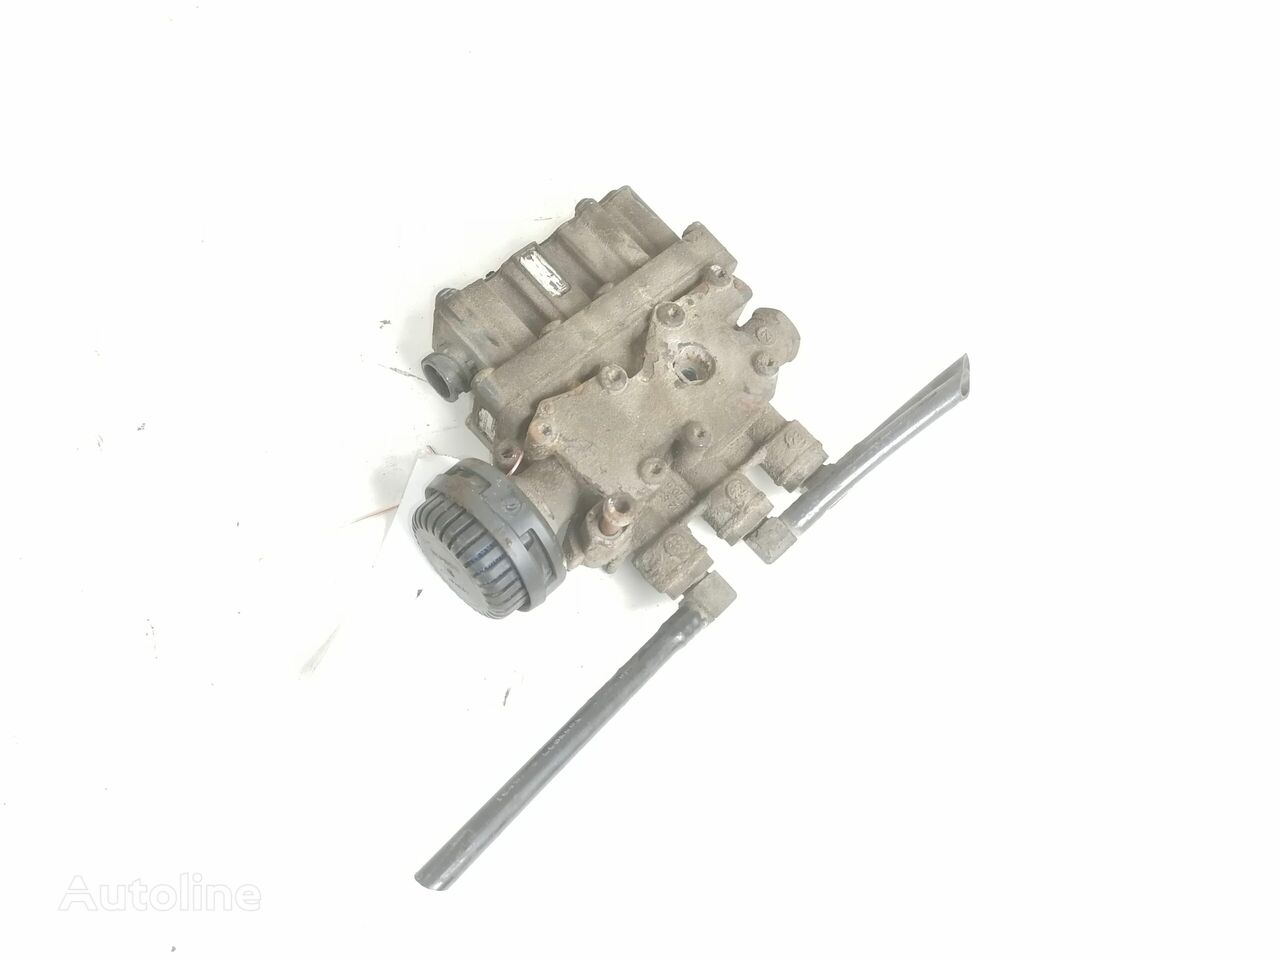 пневмоклапан DAF Air suspension control valve, ECAS 4728800300 для тягача DAF XF105-460